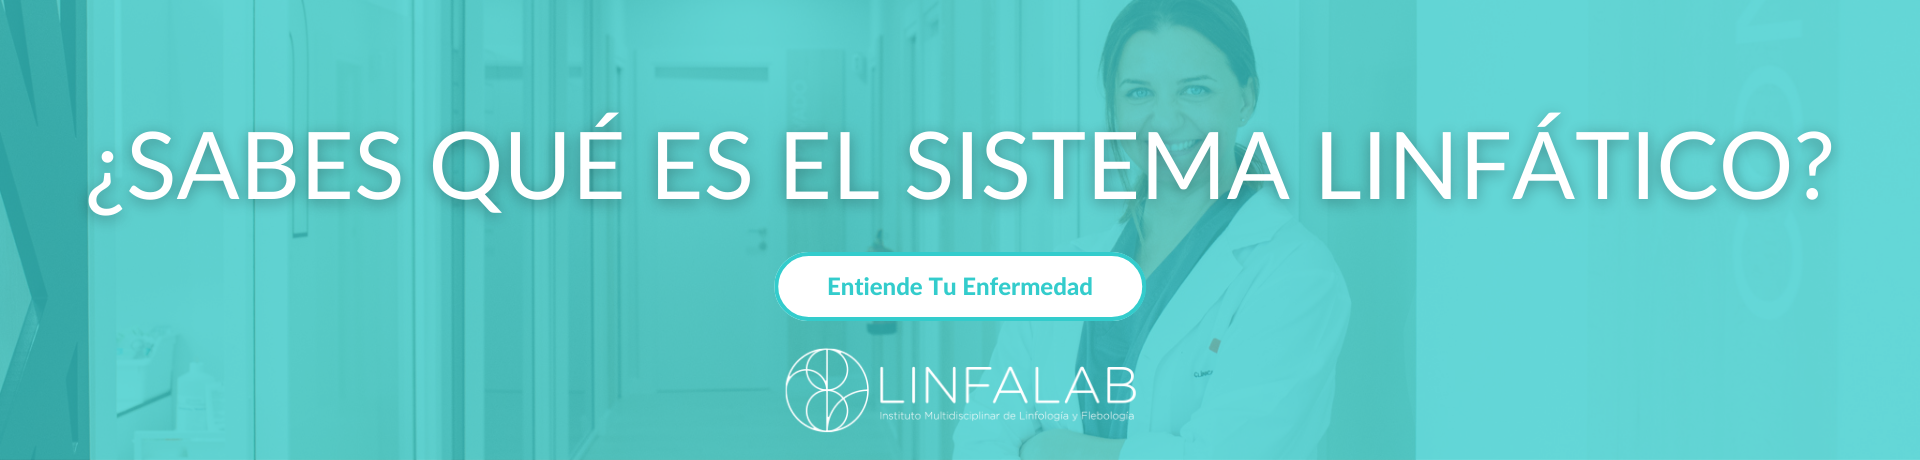 Sabes qué es el Sistema Linfático, Entiende Tu Enfermedad - slide 1 - LINFALAB.COM